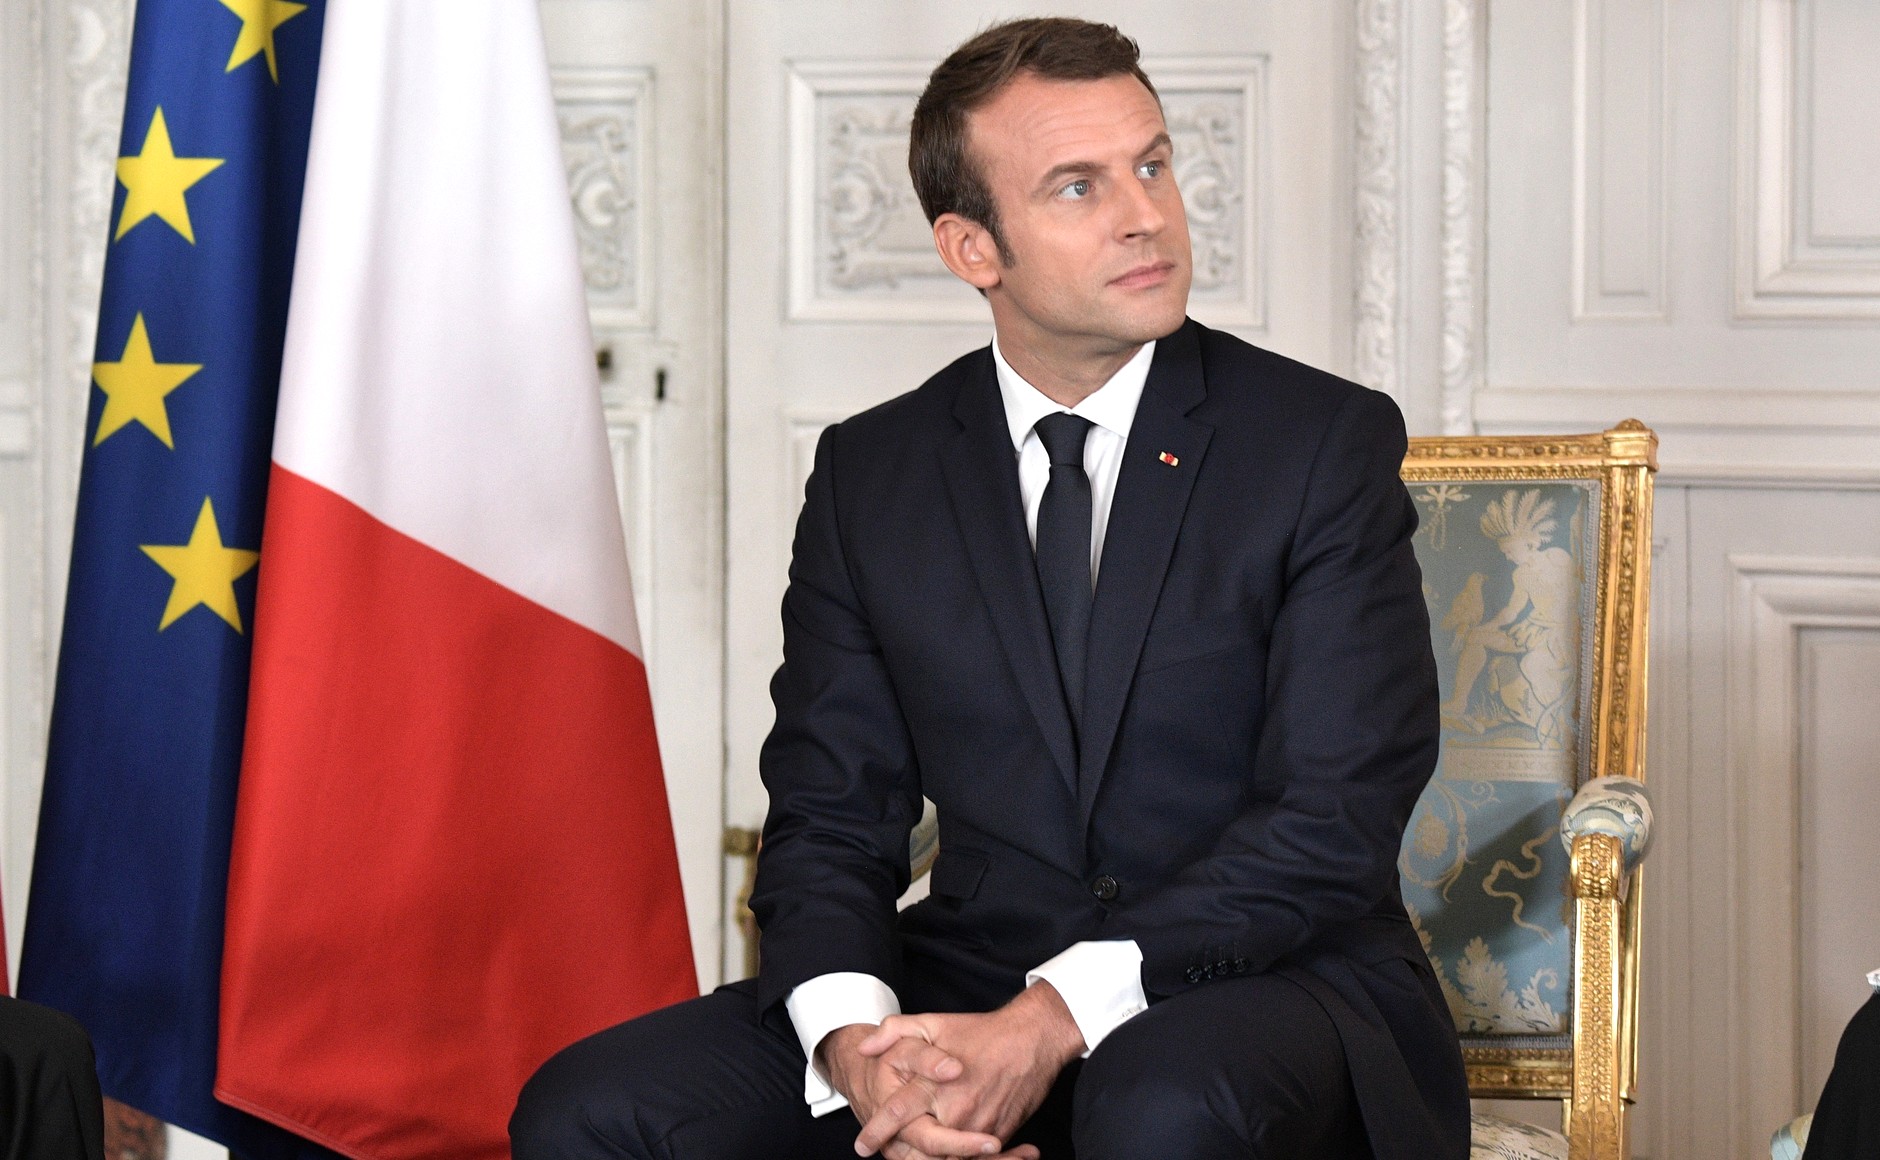     Emmanuel Macron s'exprimera à 15 heures (heure des Antilles)

